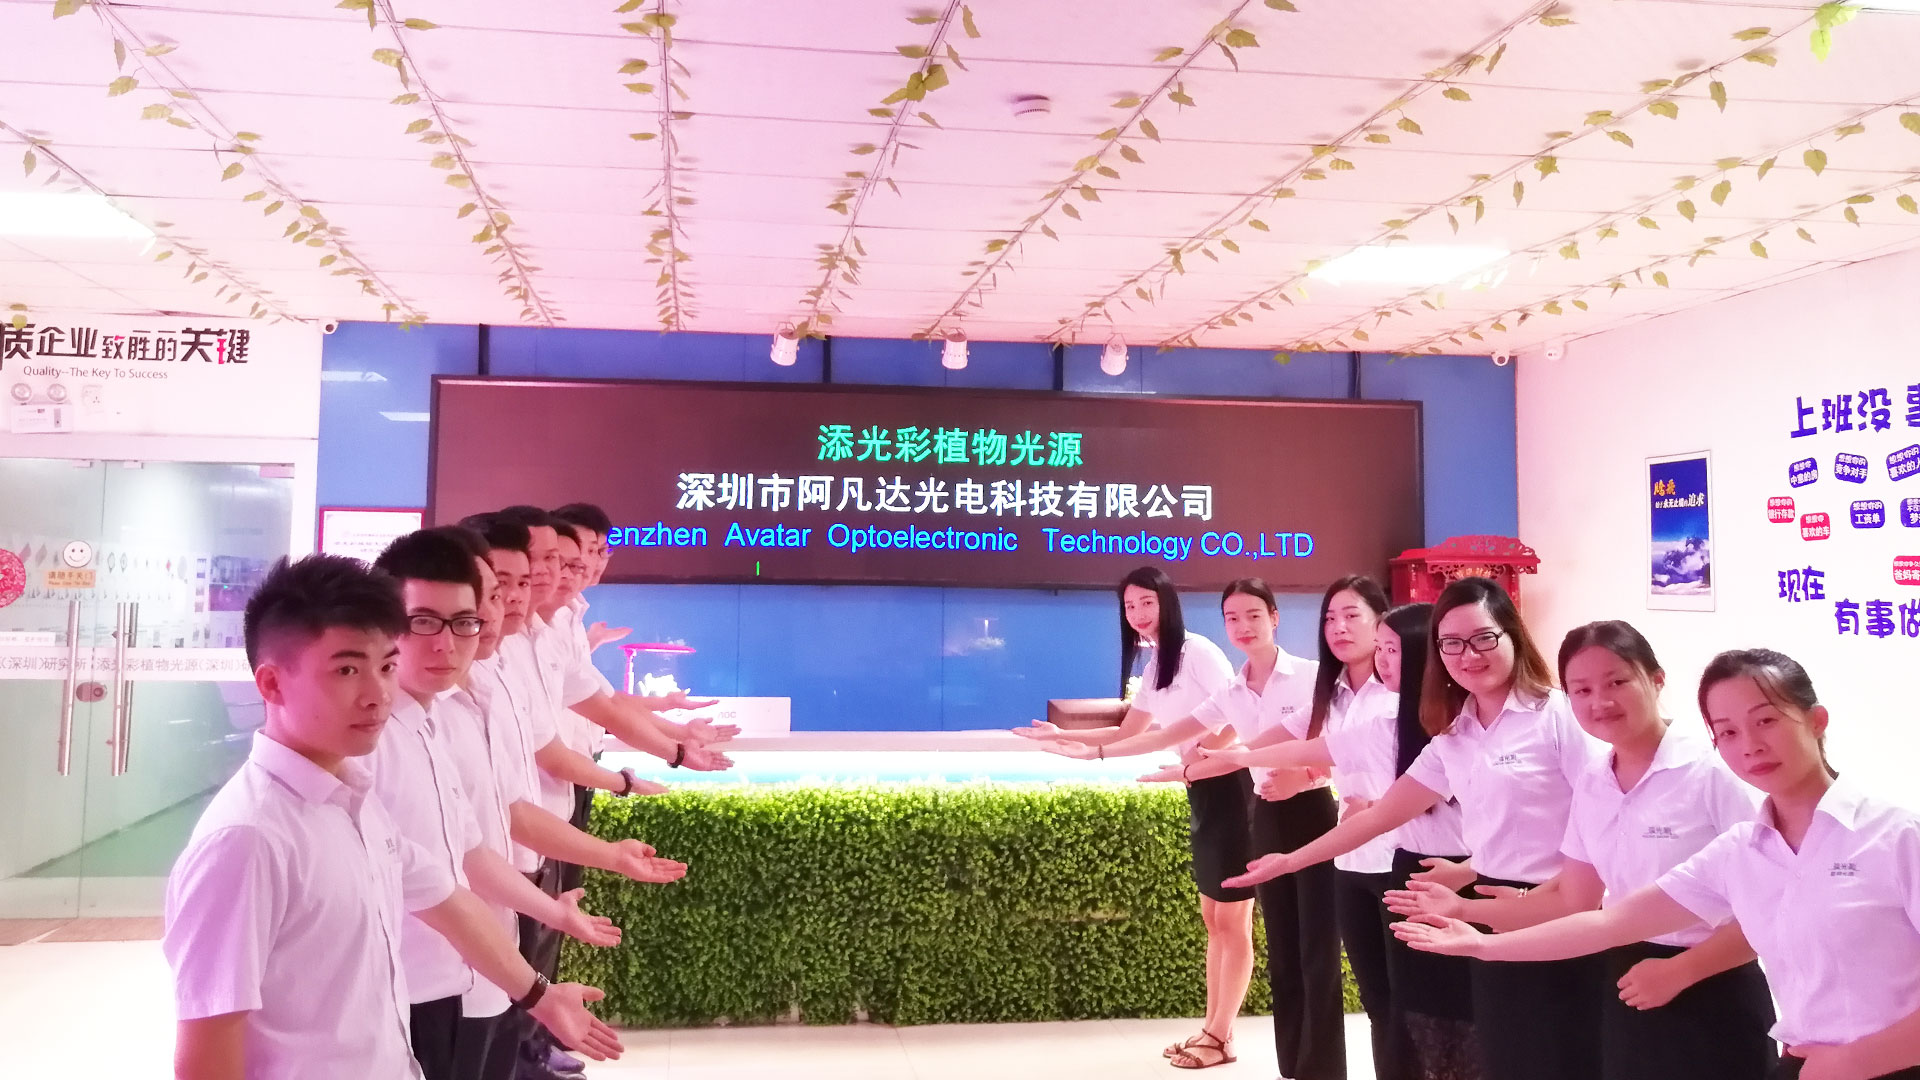 حار بيع مصنع led تنمو الأنوار ونظام الزراعة المائية من Shenzhen Avatar Optoelectronic Technology Co.، ltd